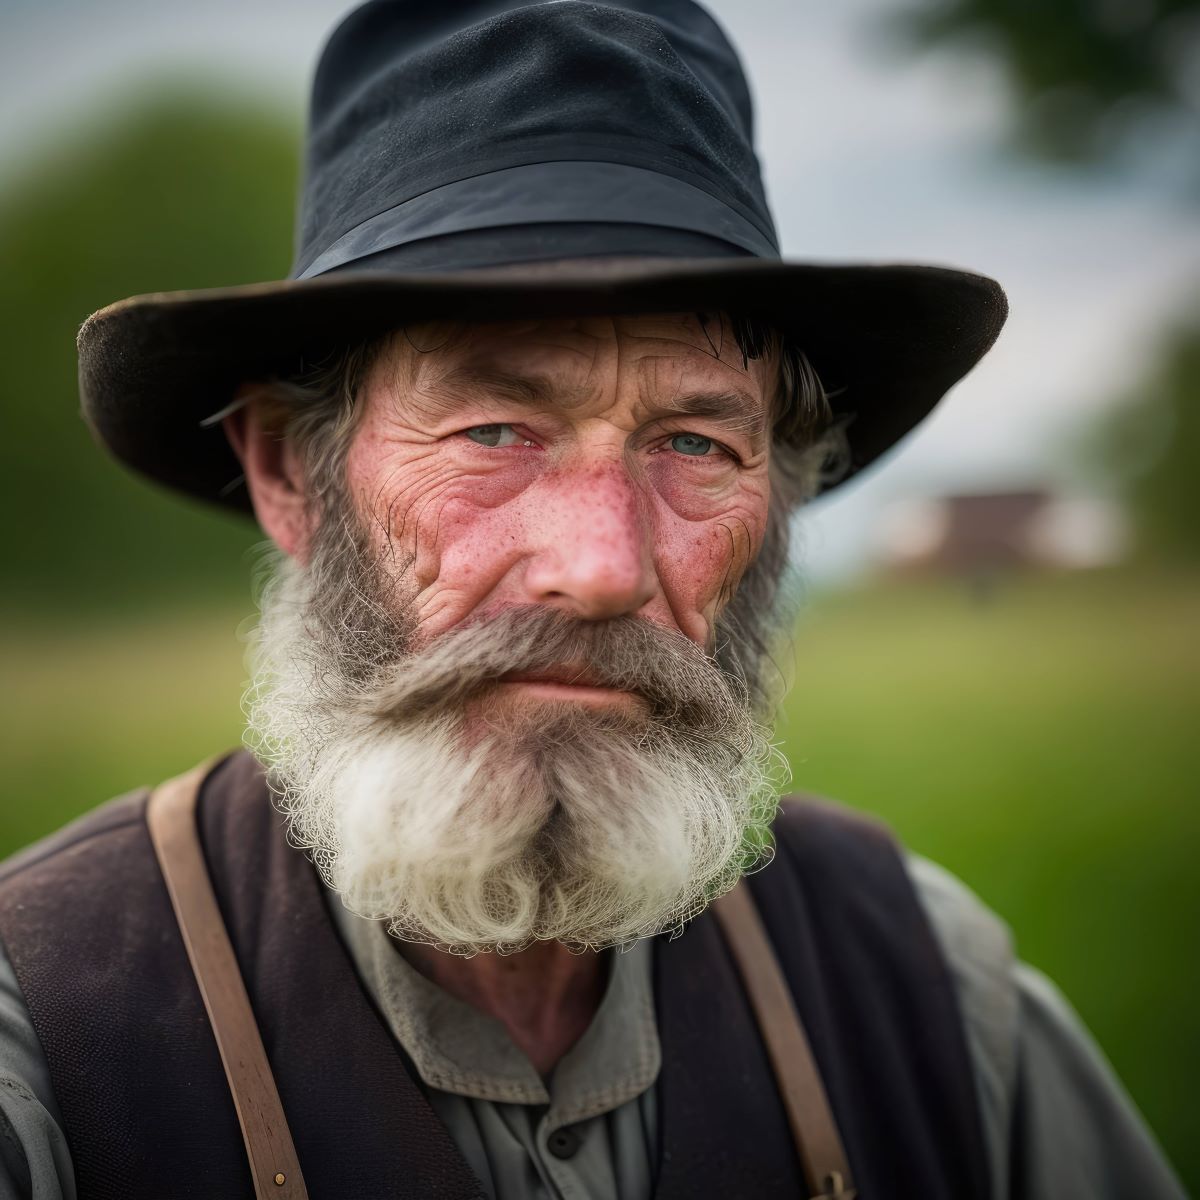 Mann mit Amish-Bart und Hut guckt in die Kamera